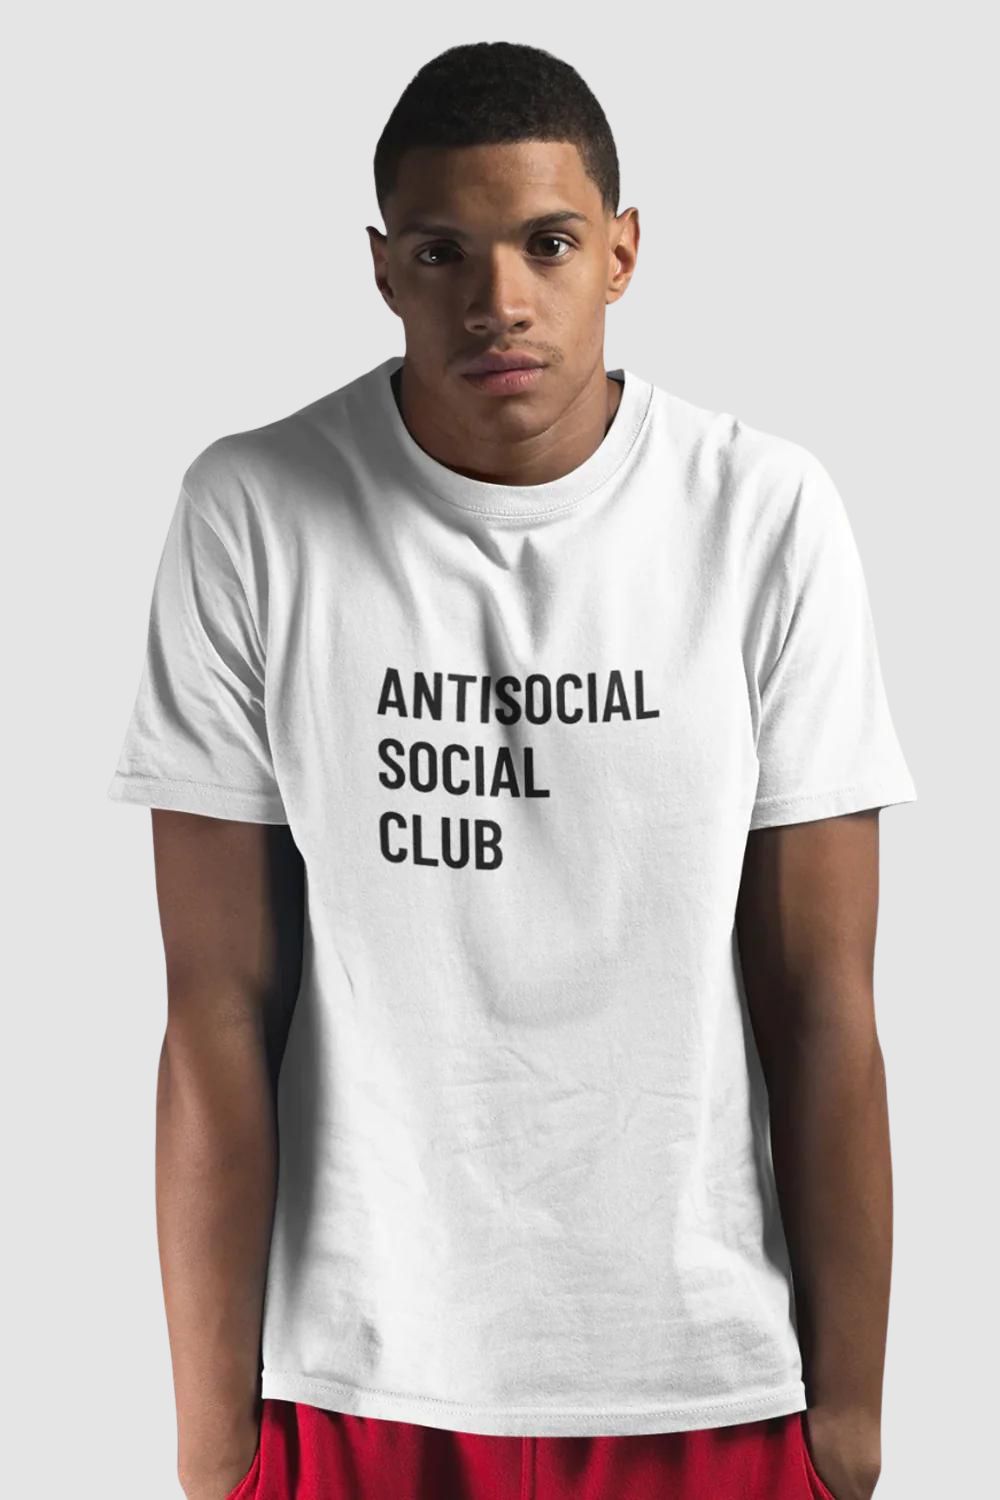 Antisocial Social Club Graphic Printed White Tshirt